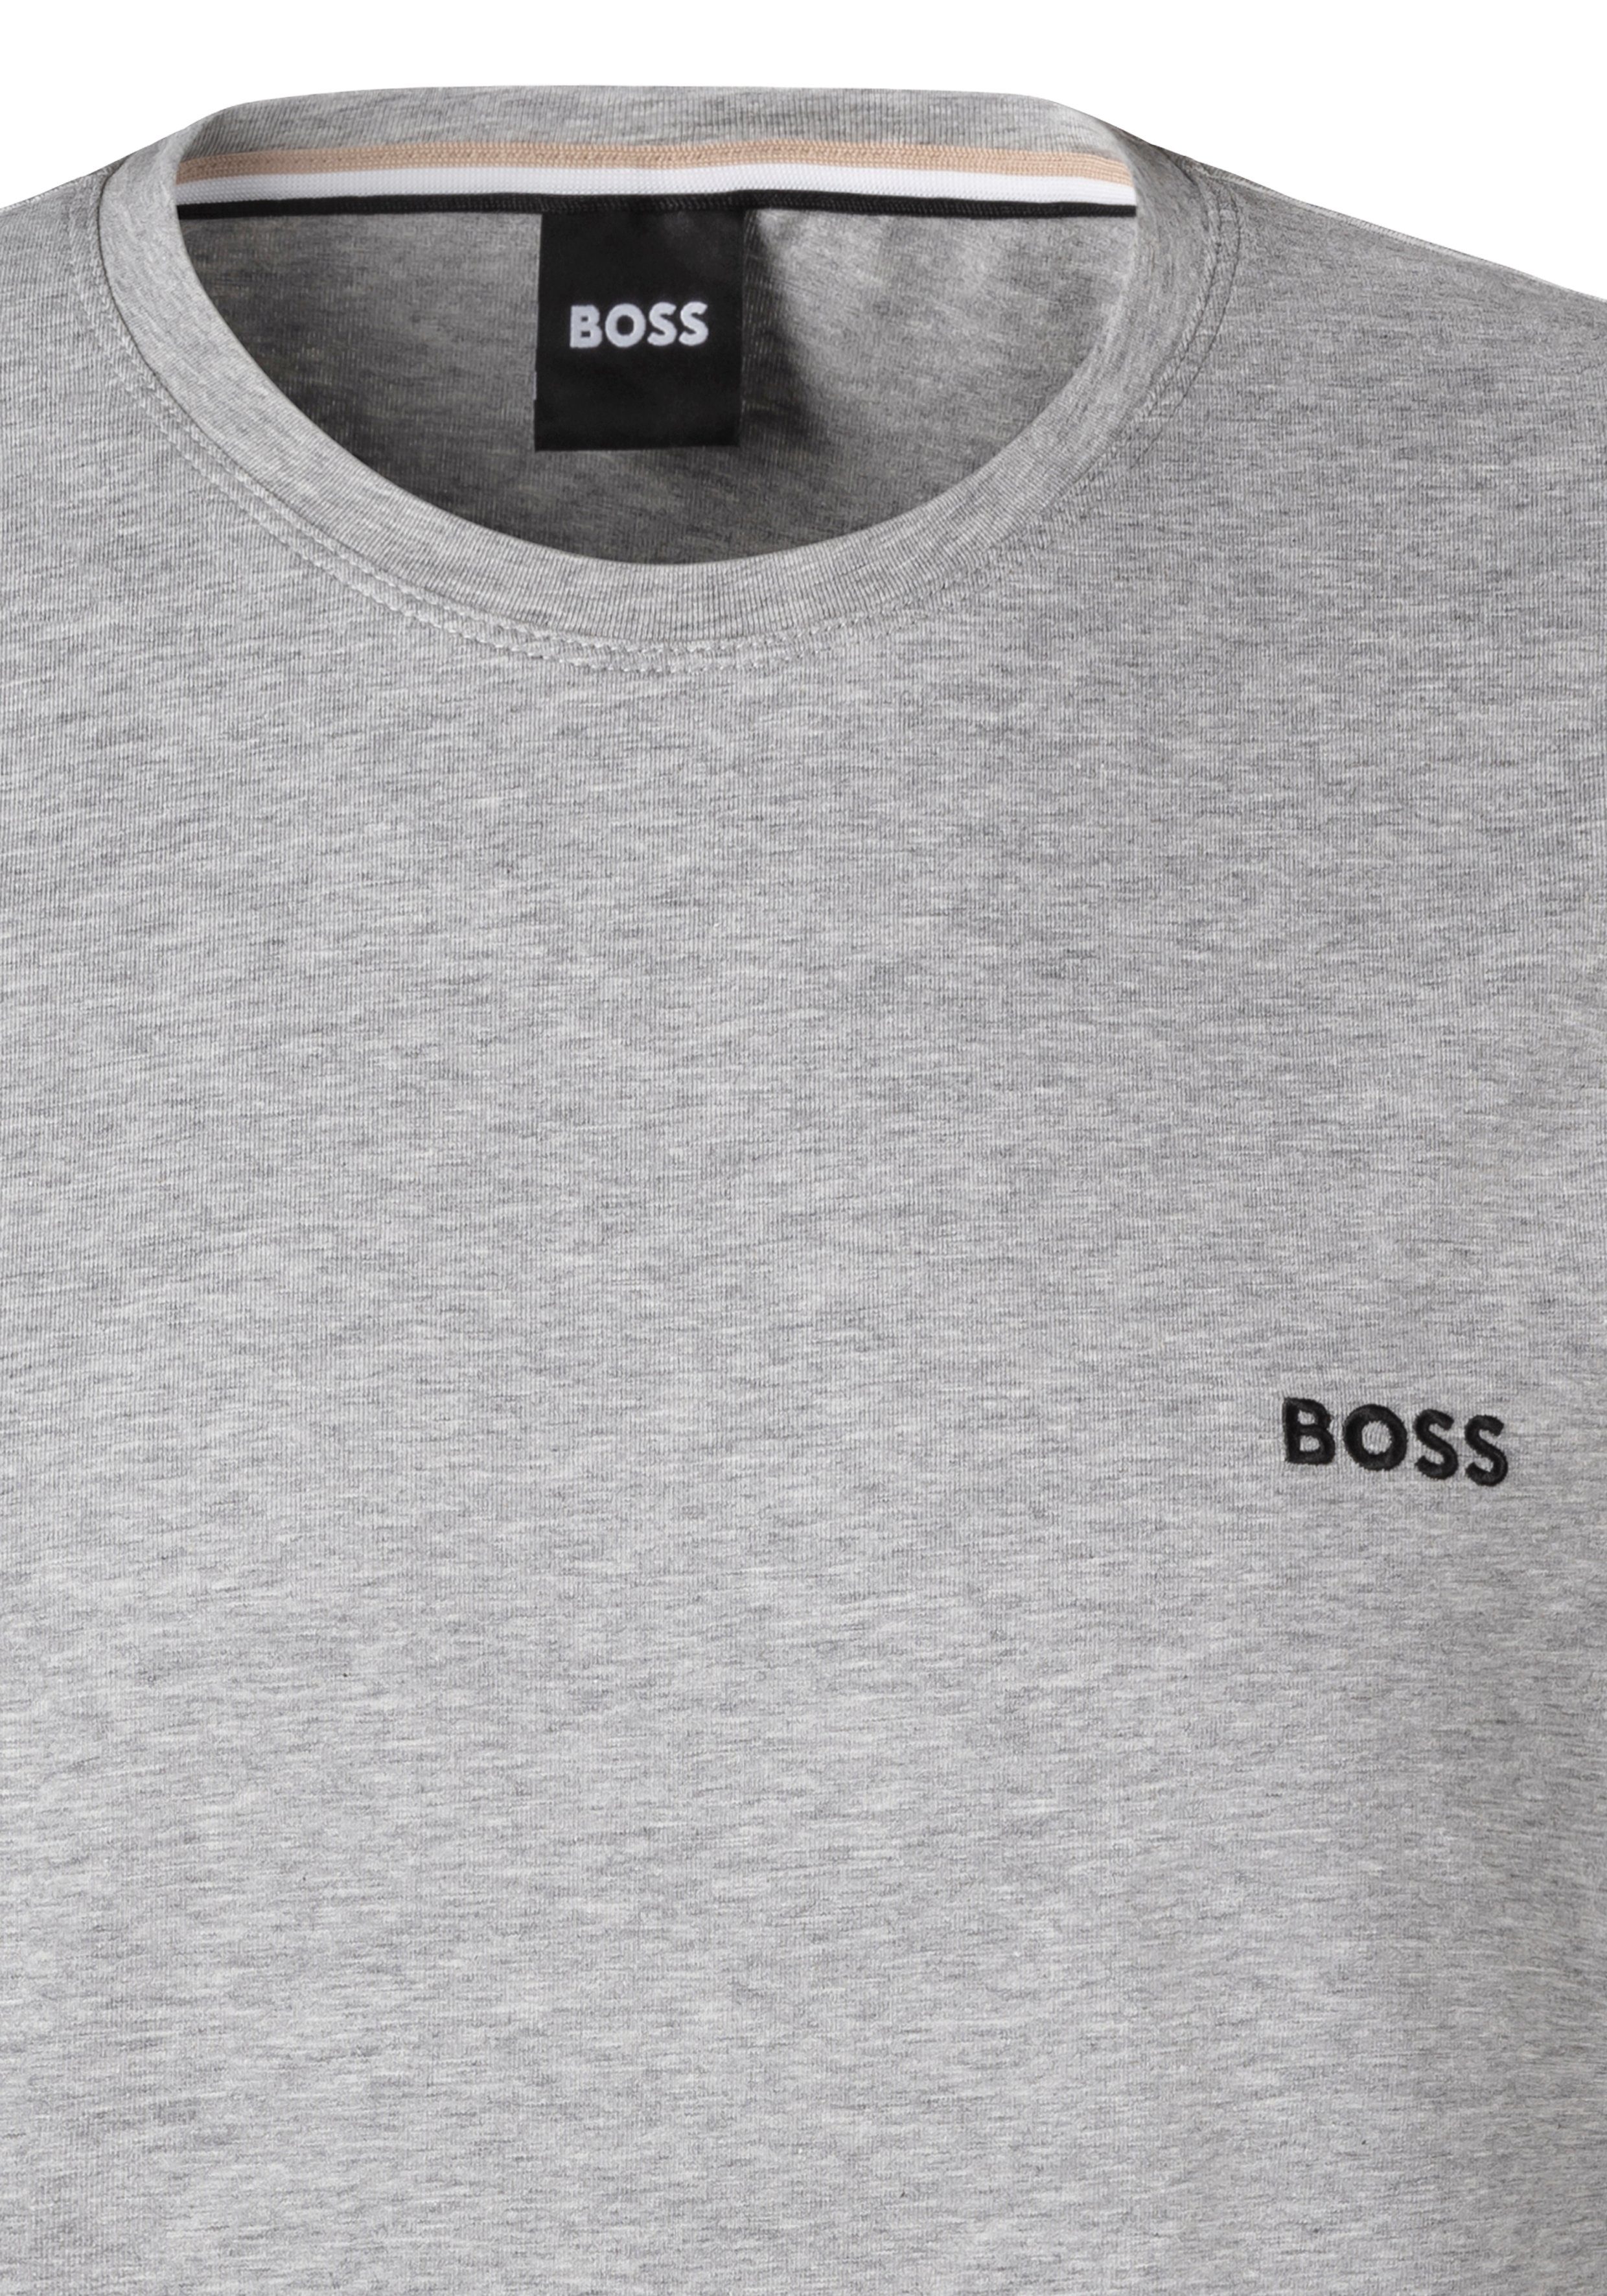 T-Shirt Brustlogo grau-meliert BOSS mit